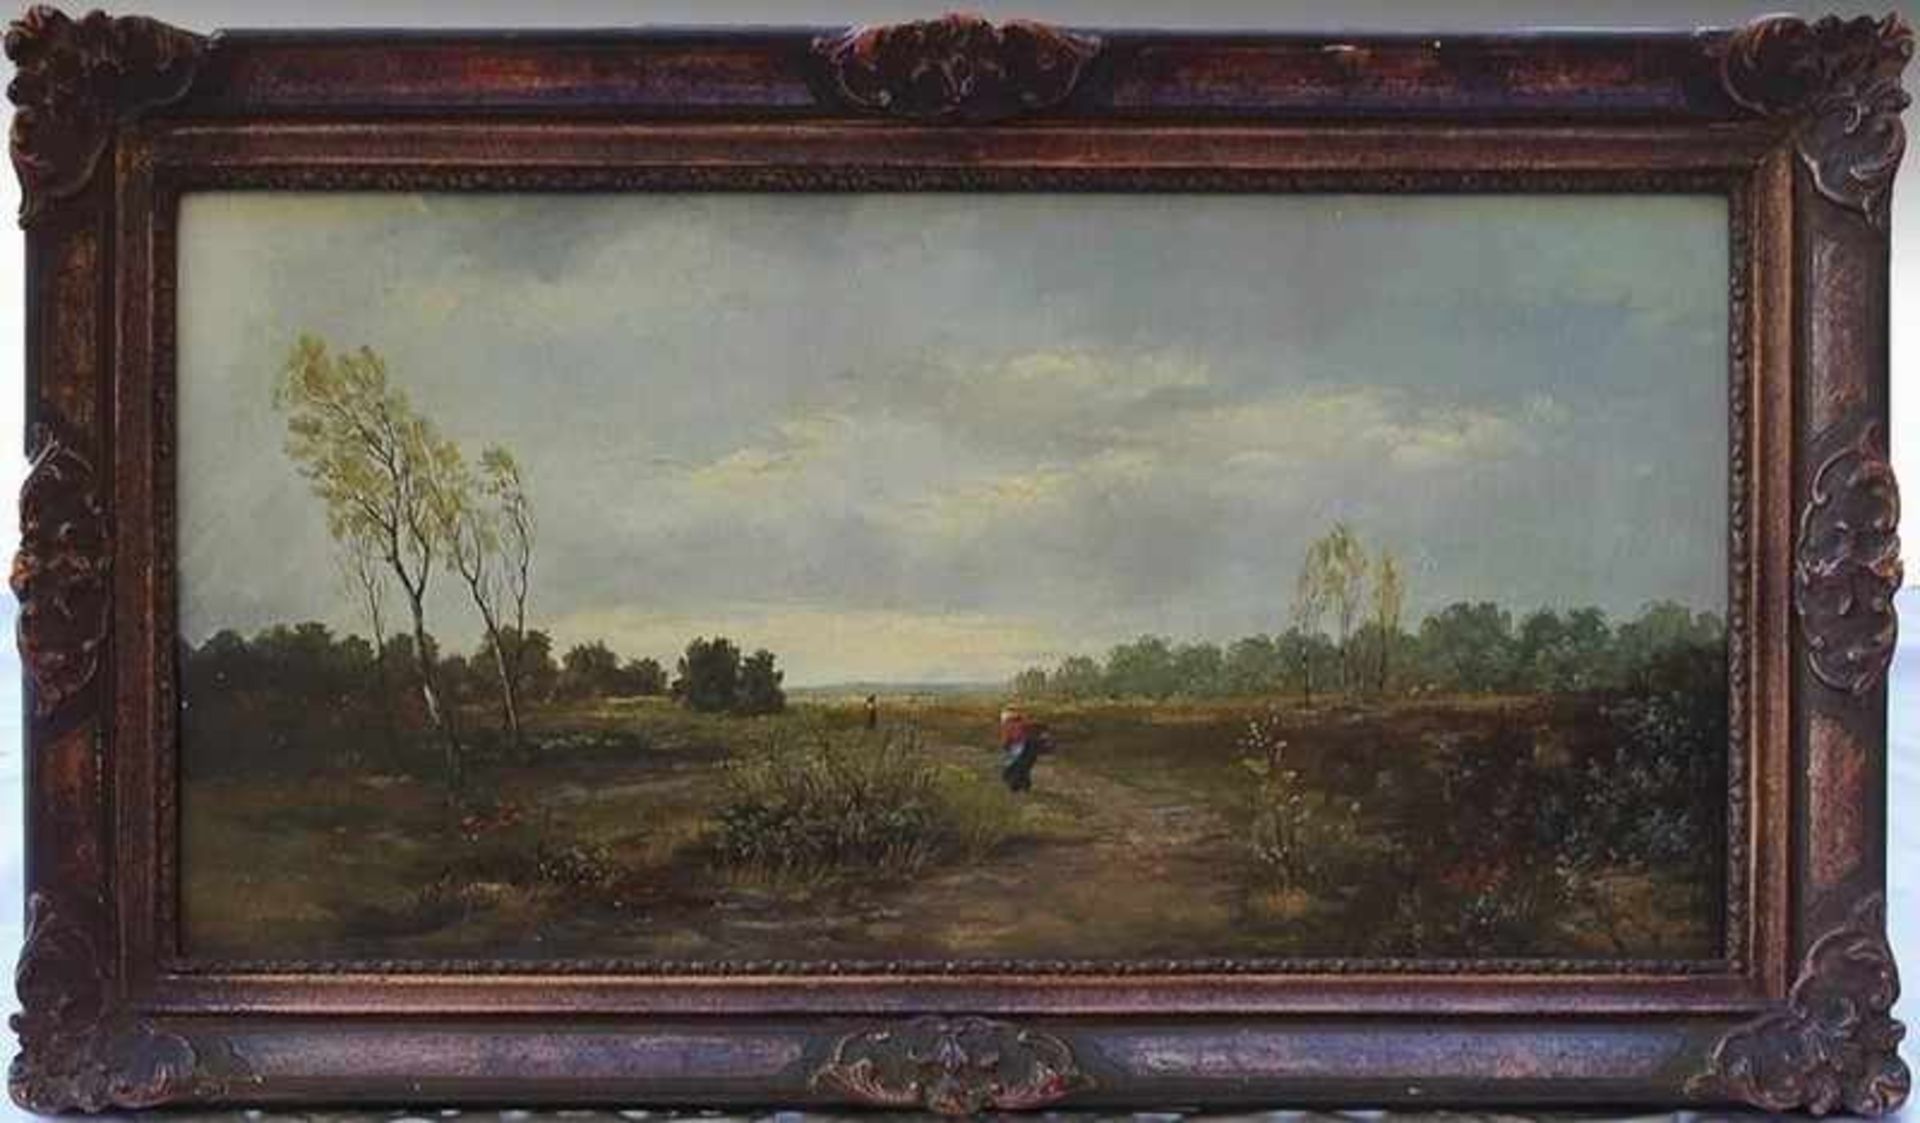 Helmer um 1900, "Bäuerin auf dem Feld beim Einholen der Ernte", schlichte ländliche Szene,